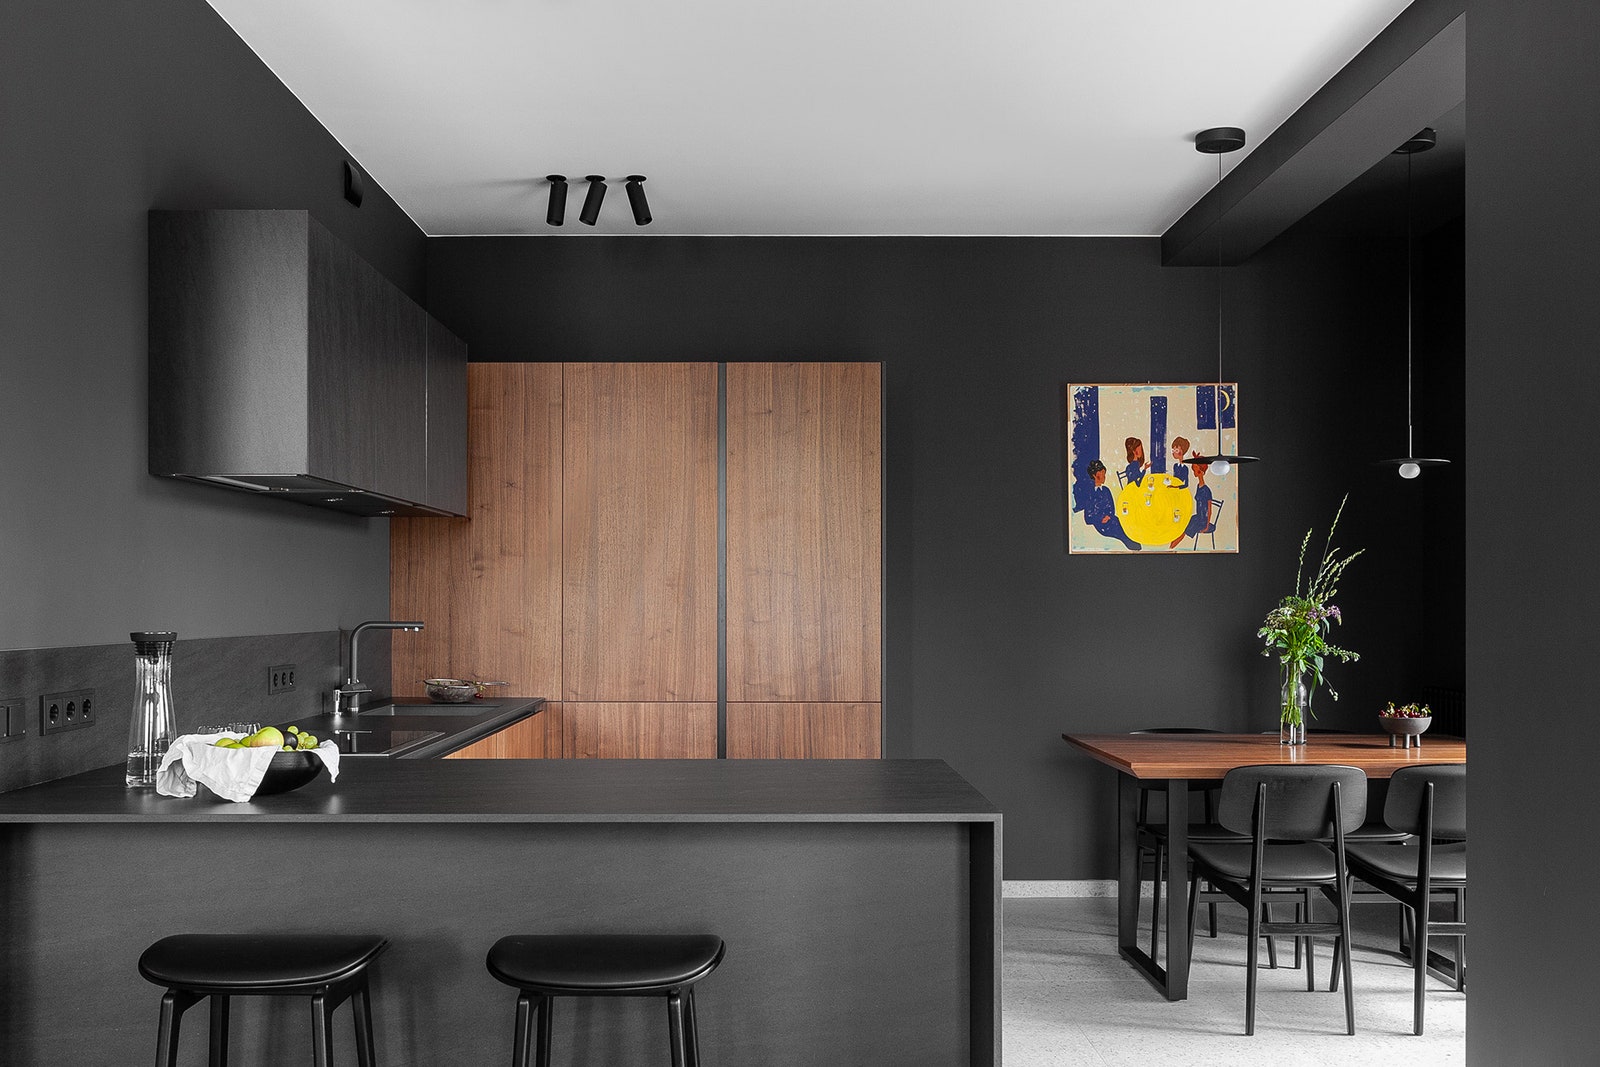 Фрагмент кухни. Кухонный гарнитур состоит из трех верхних шкафов с керамическими фасадами и вместительных баз с фасадами...